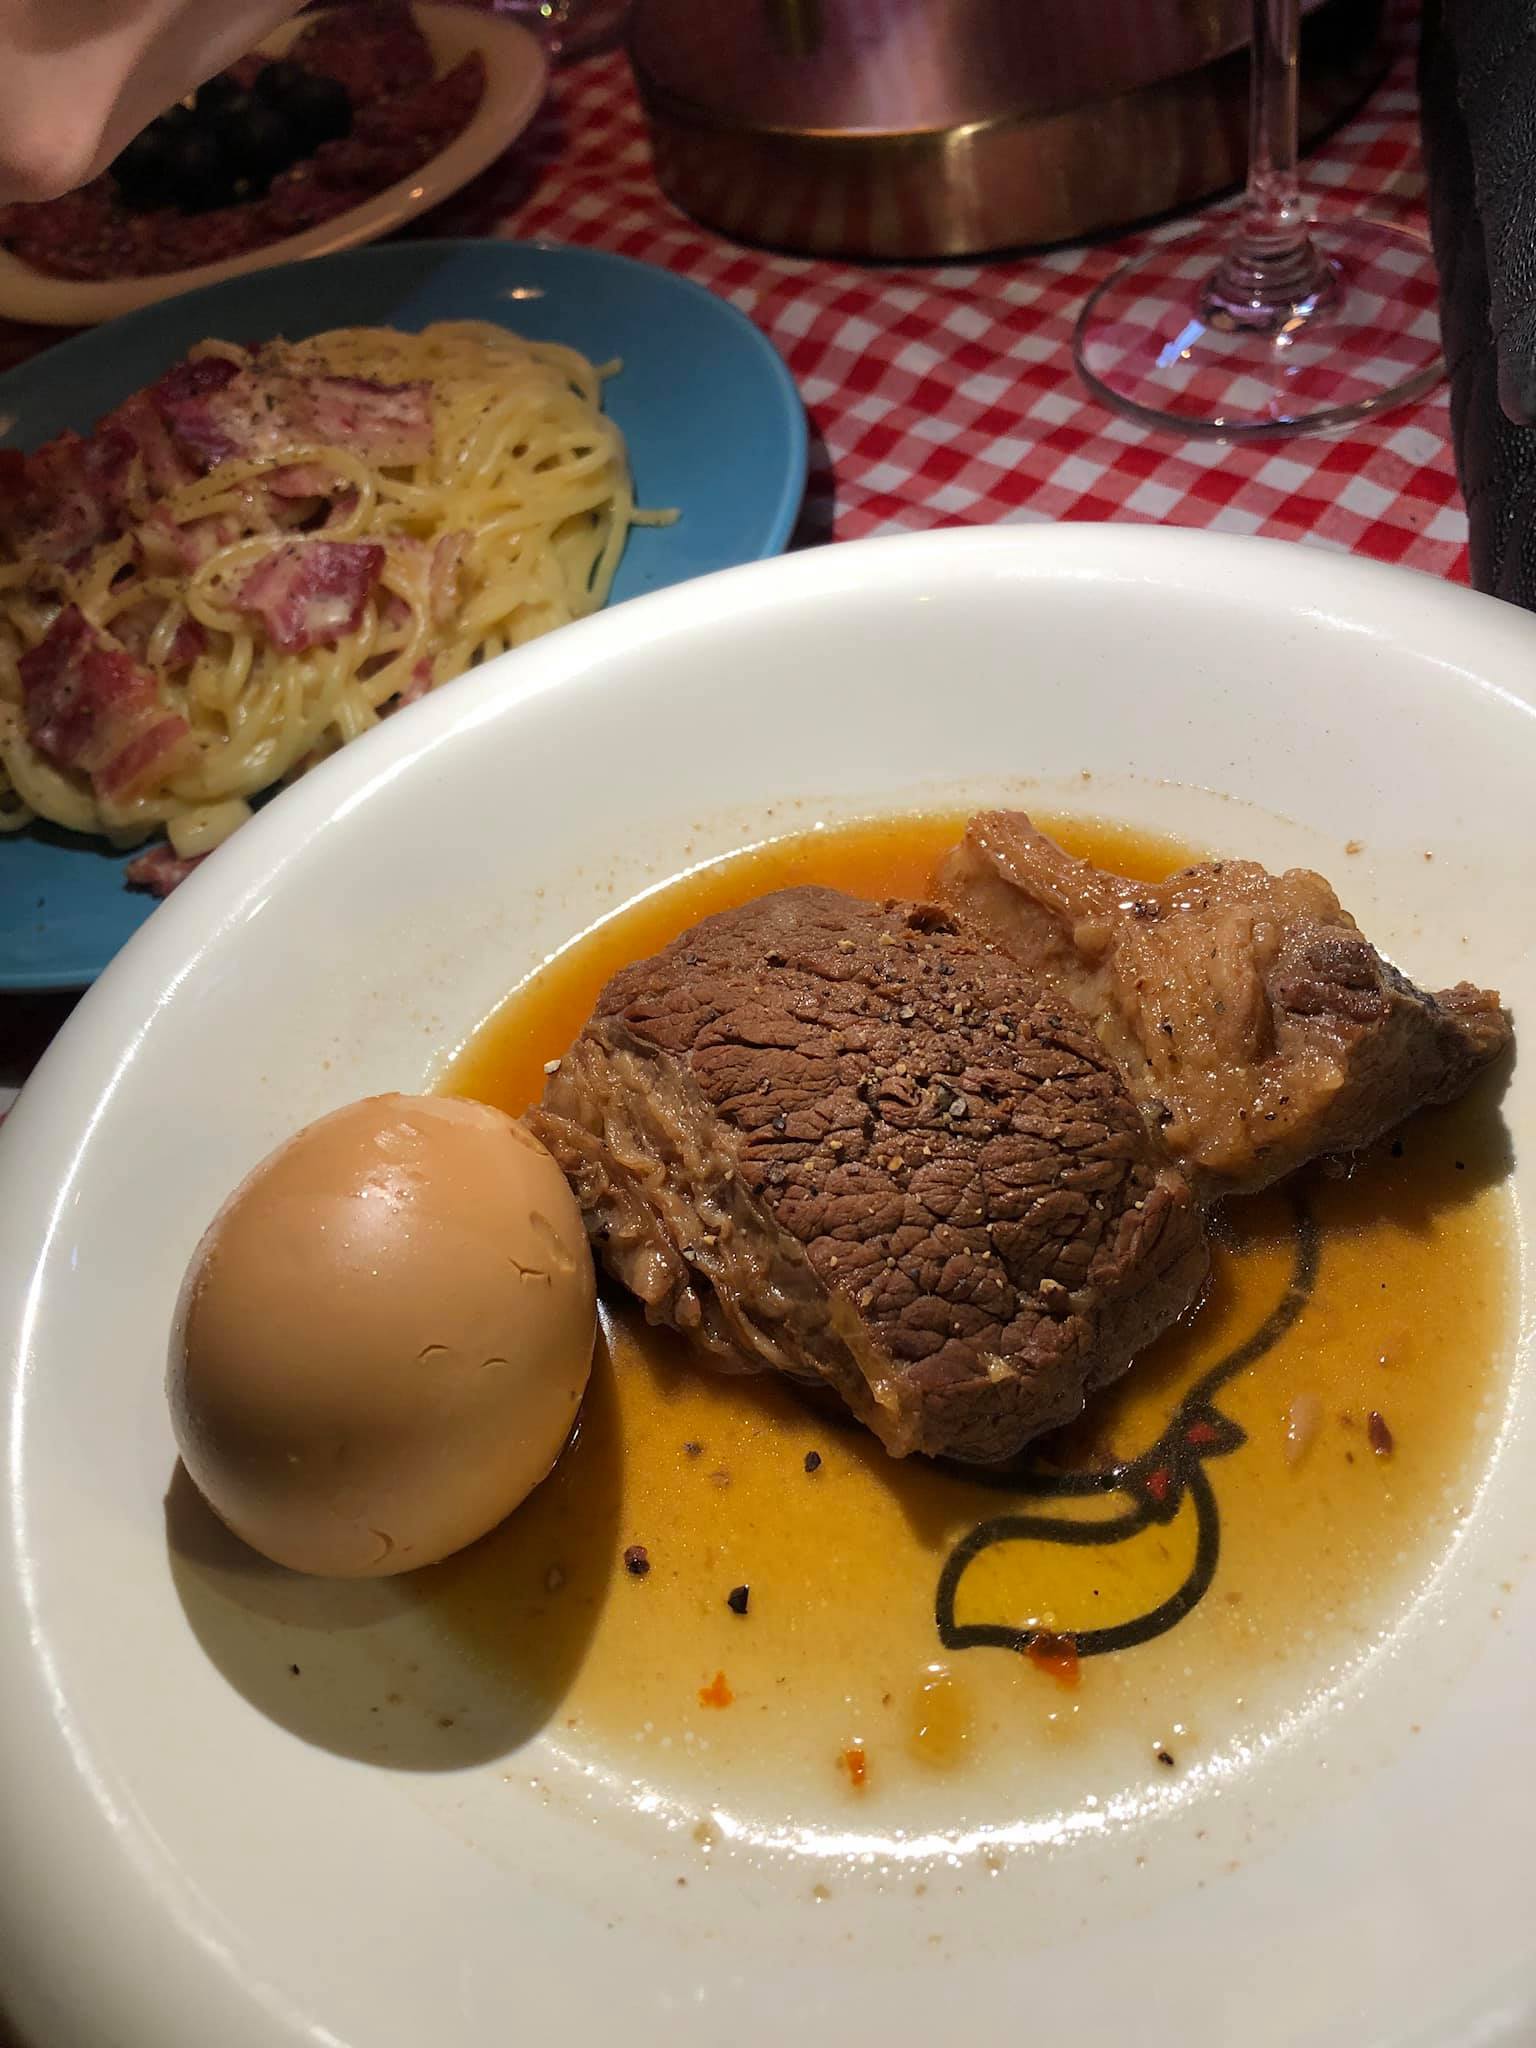 Vào nhà hàng Pháp gọi món sang chảnh nhưng lại nhận được đĩa… thịt kho hột vịt, cô gái đăng bài bóc phốt khiến dân mạng cười bò - Ảnh 2.